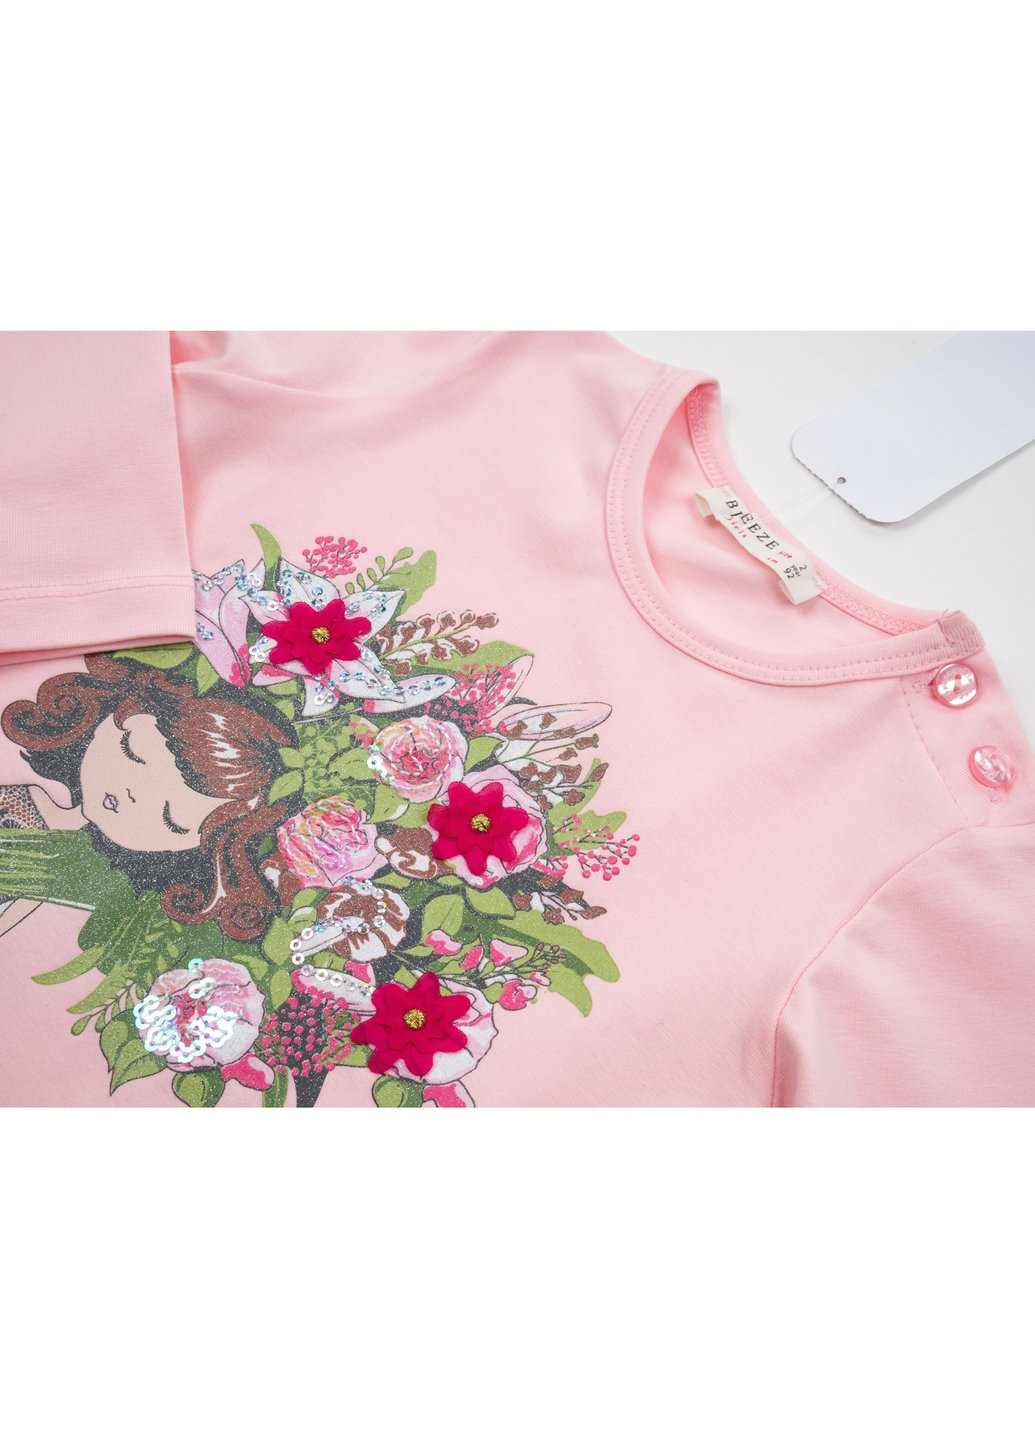 Комбинированный демисезонный набор детской одежды с девочкой с букетом (13258-104g-pink) Breeze